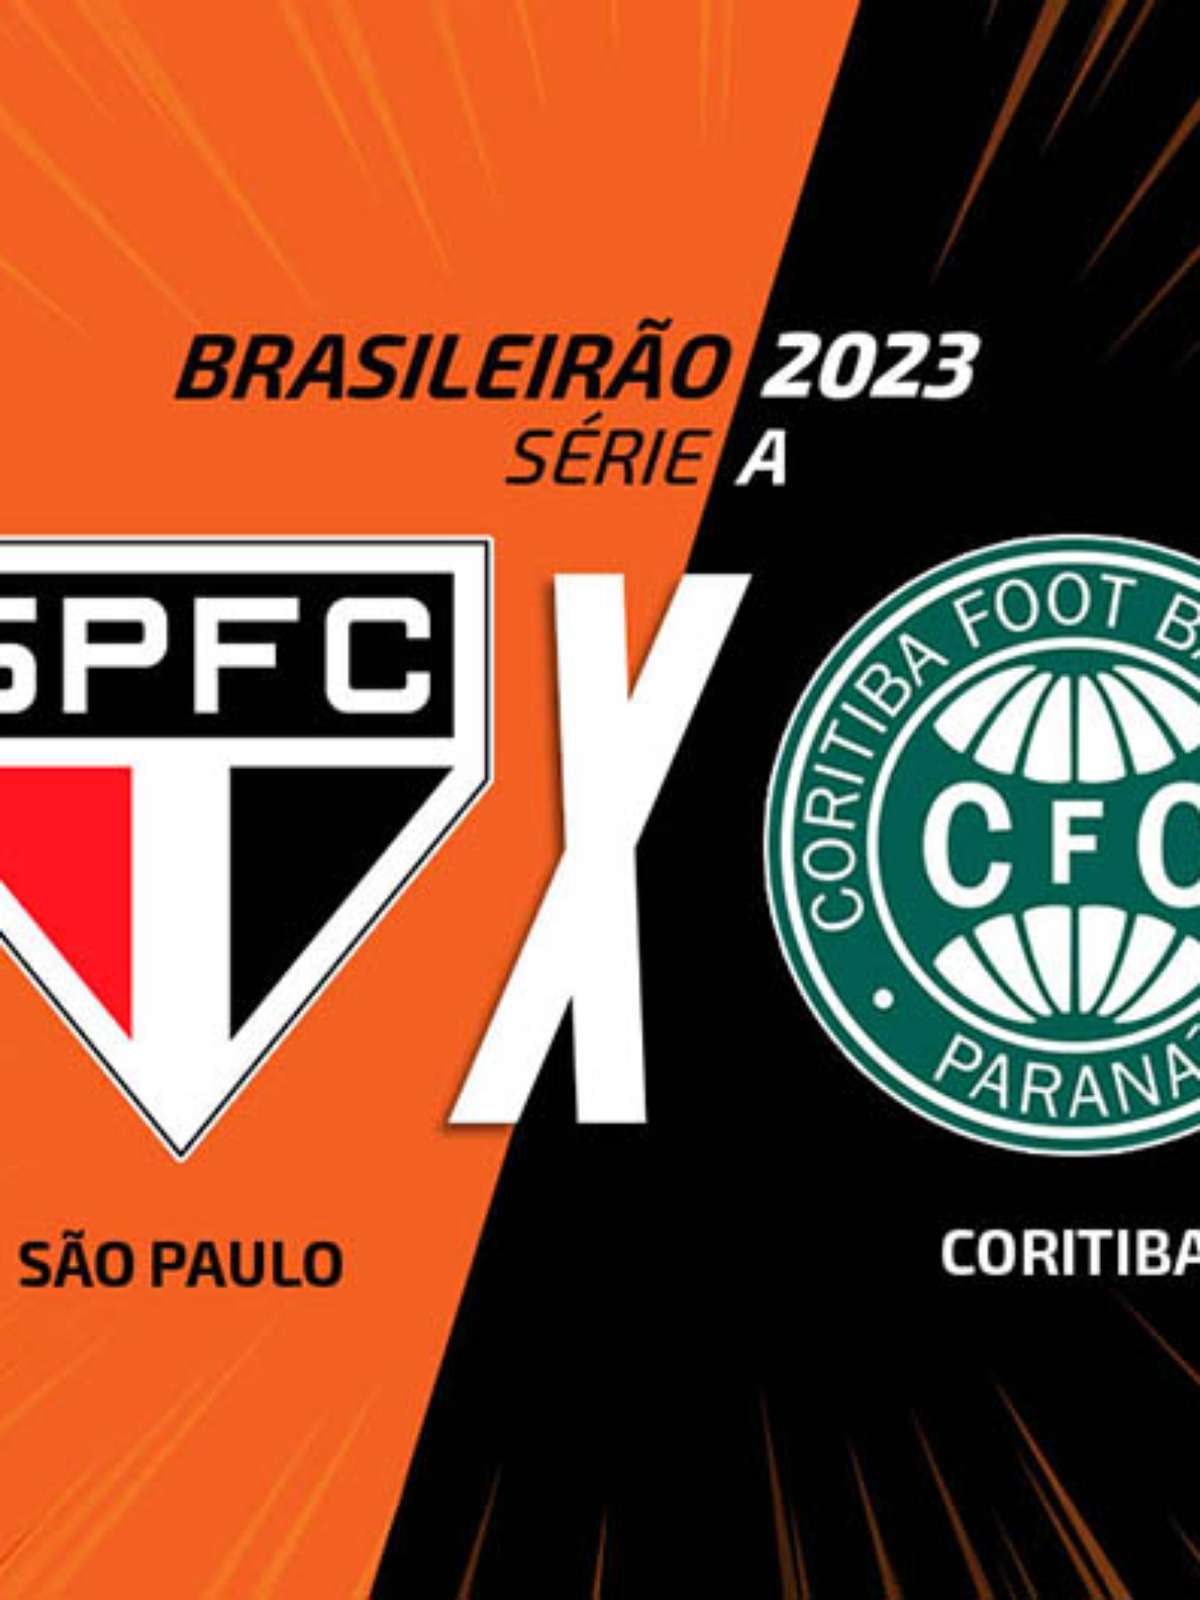 Estatísticas pré-jogo: Coritiba - SPFC